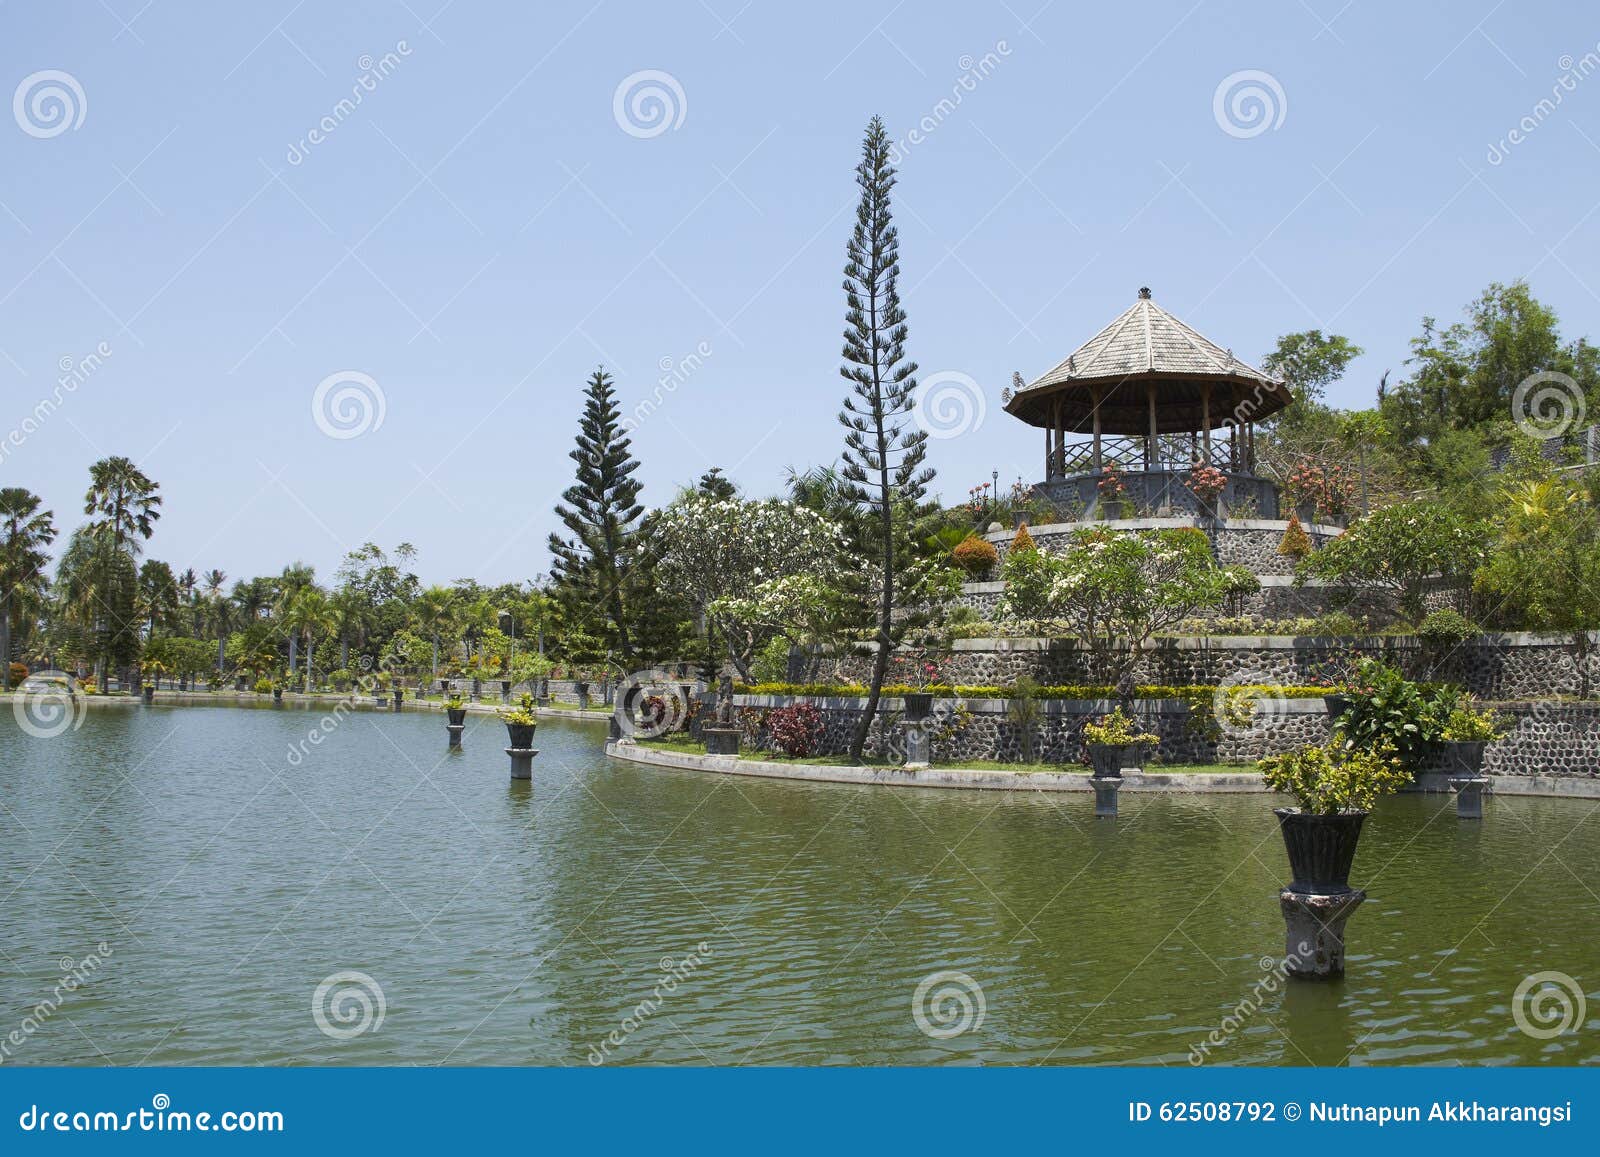 Pavilion Taman Soekasada Ujung Water Palace Stock Photos - Download 11